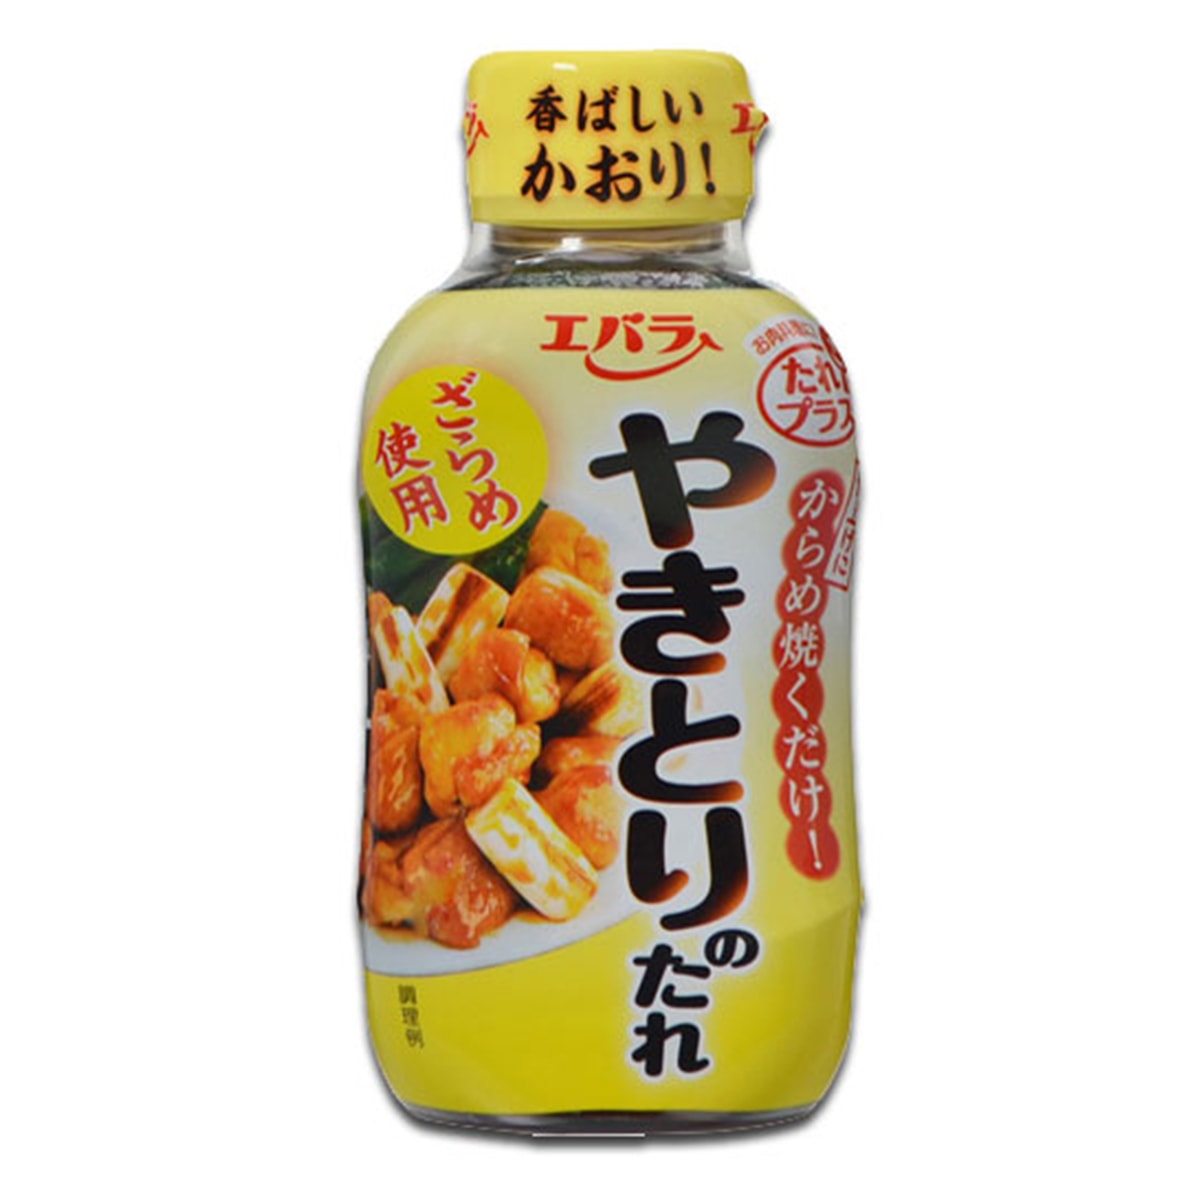 Buy Ebara Yakitori Sauce / Teriyaki Sauce / Grilled Chicken Sauce - 240 gm